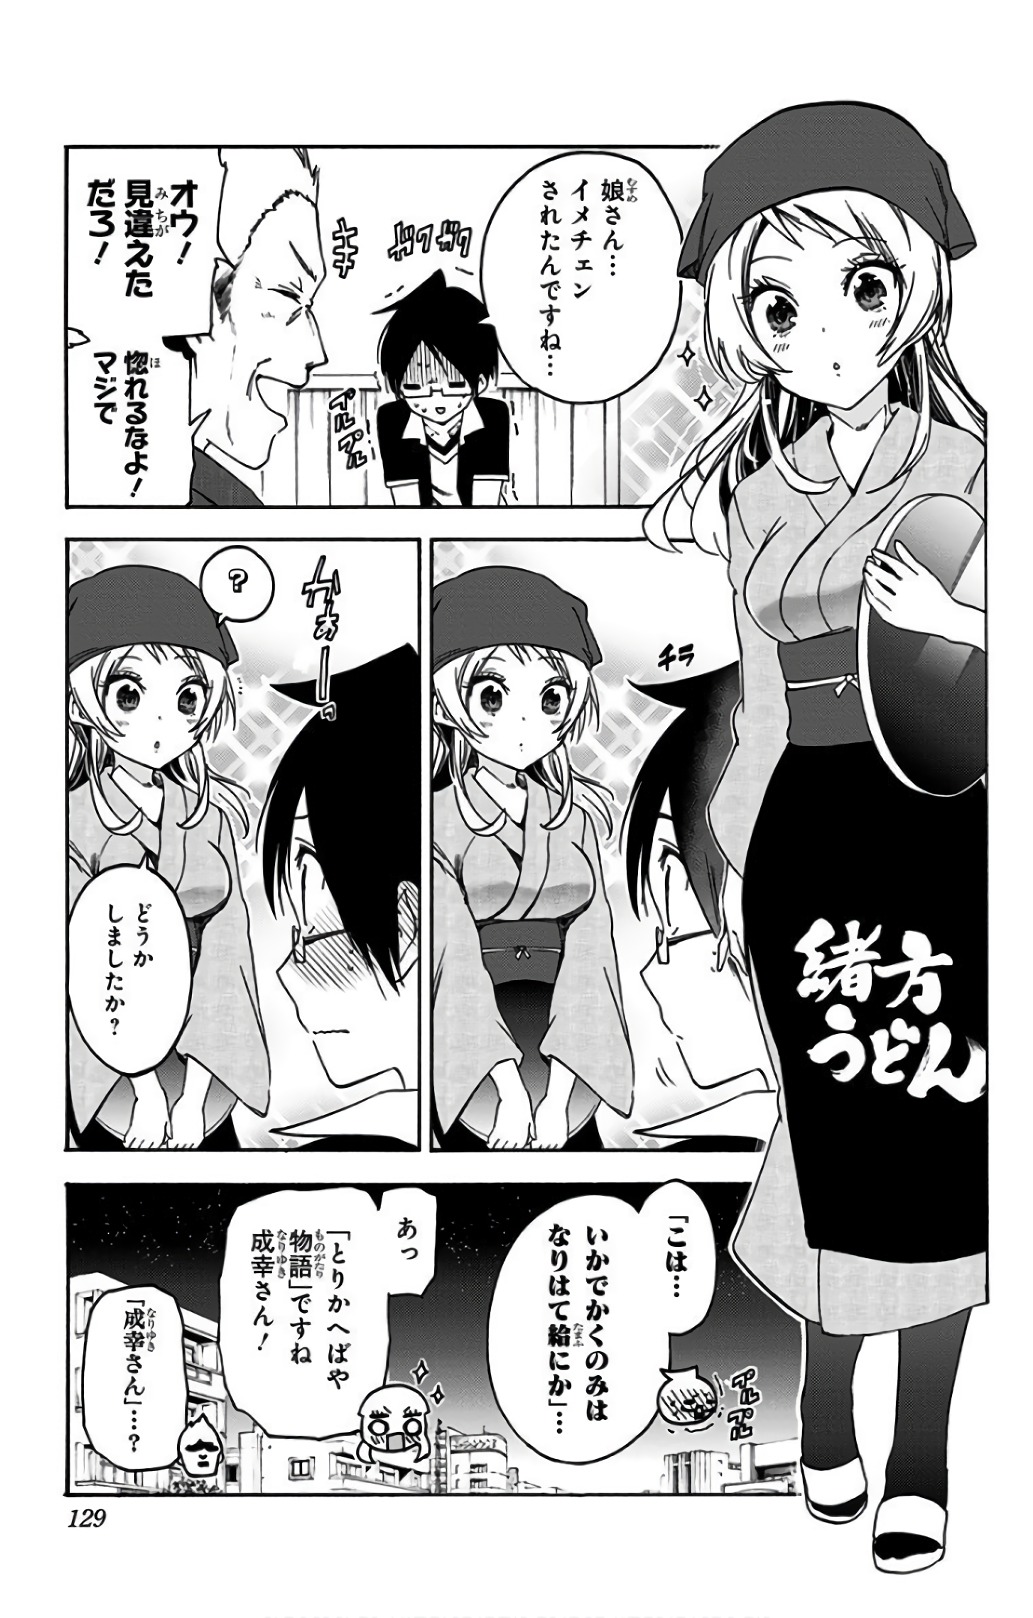 Bokutachi wa Benkyou ga Dekinai - Chapter 57 - Page 21